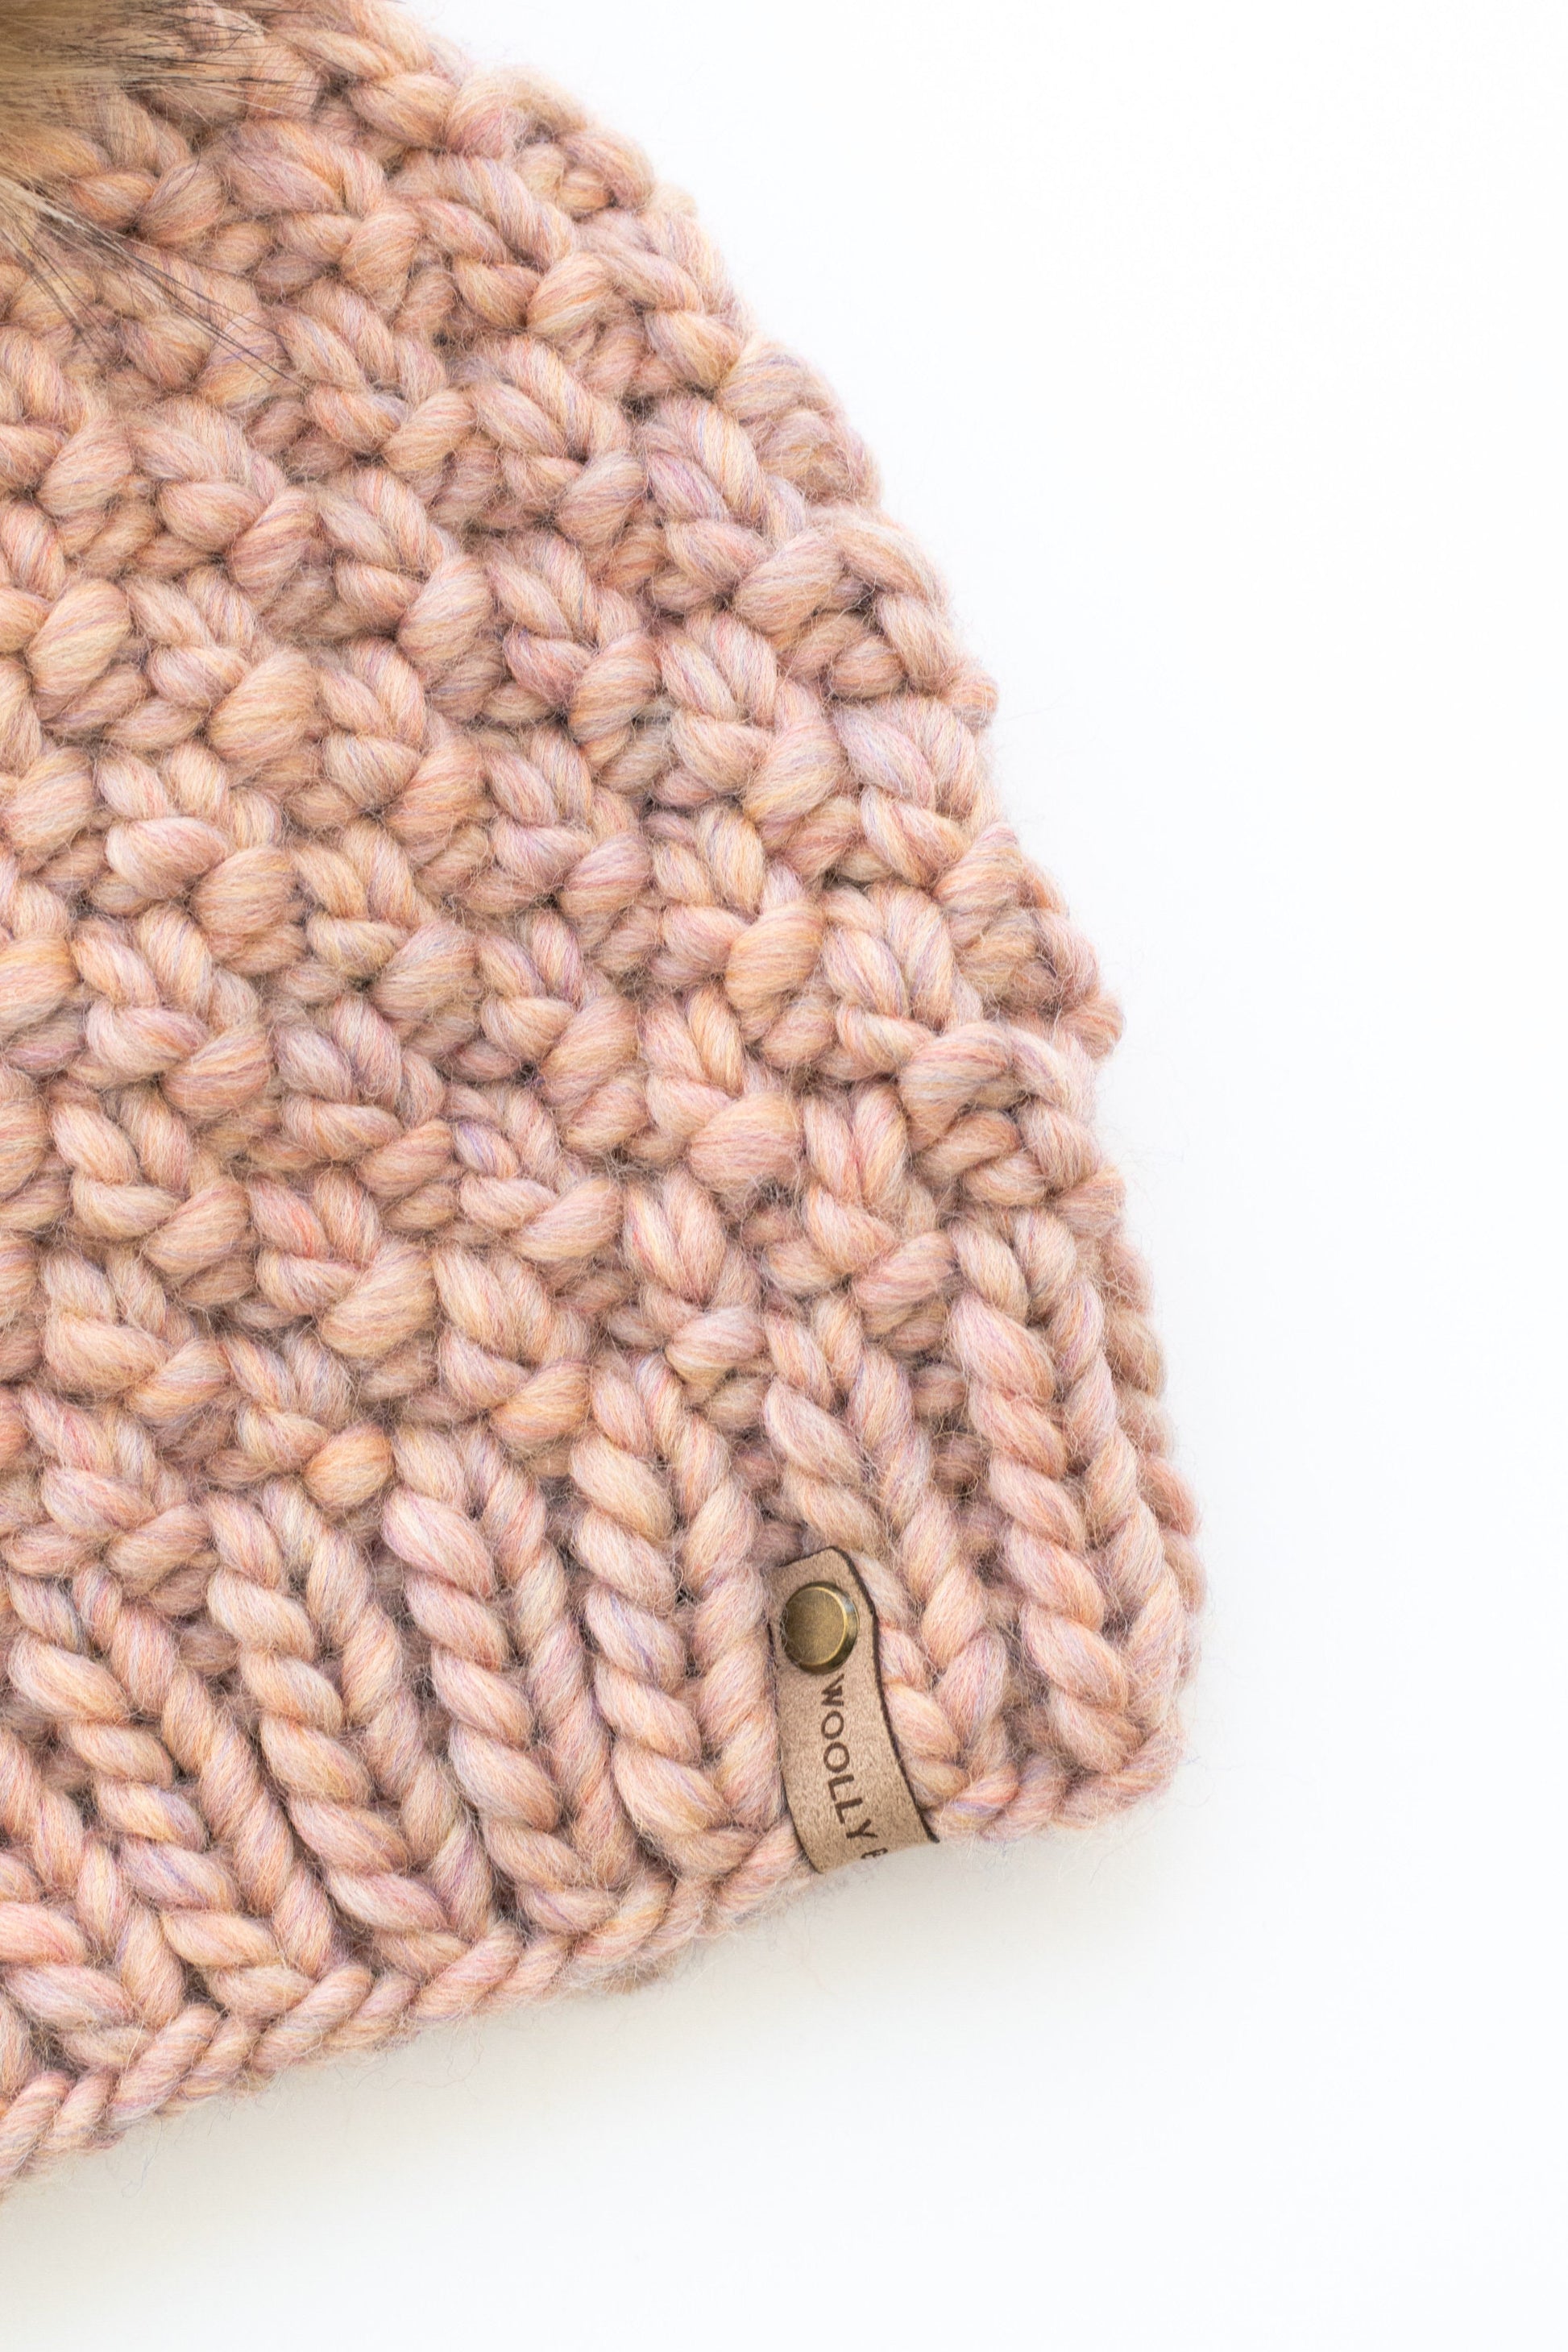 Blush Pink Peruvian Wool Knit Hat with Faux Fur Pom Pom